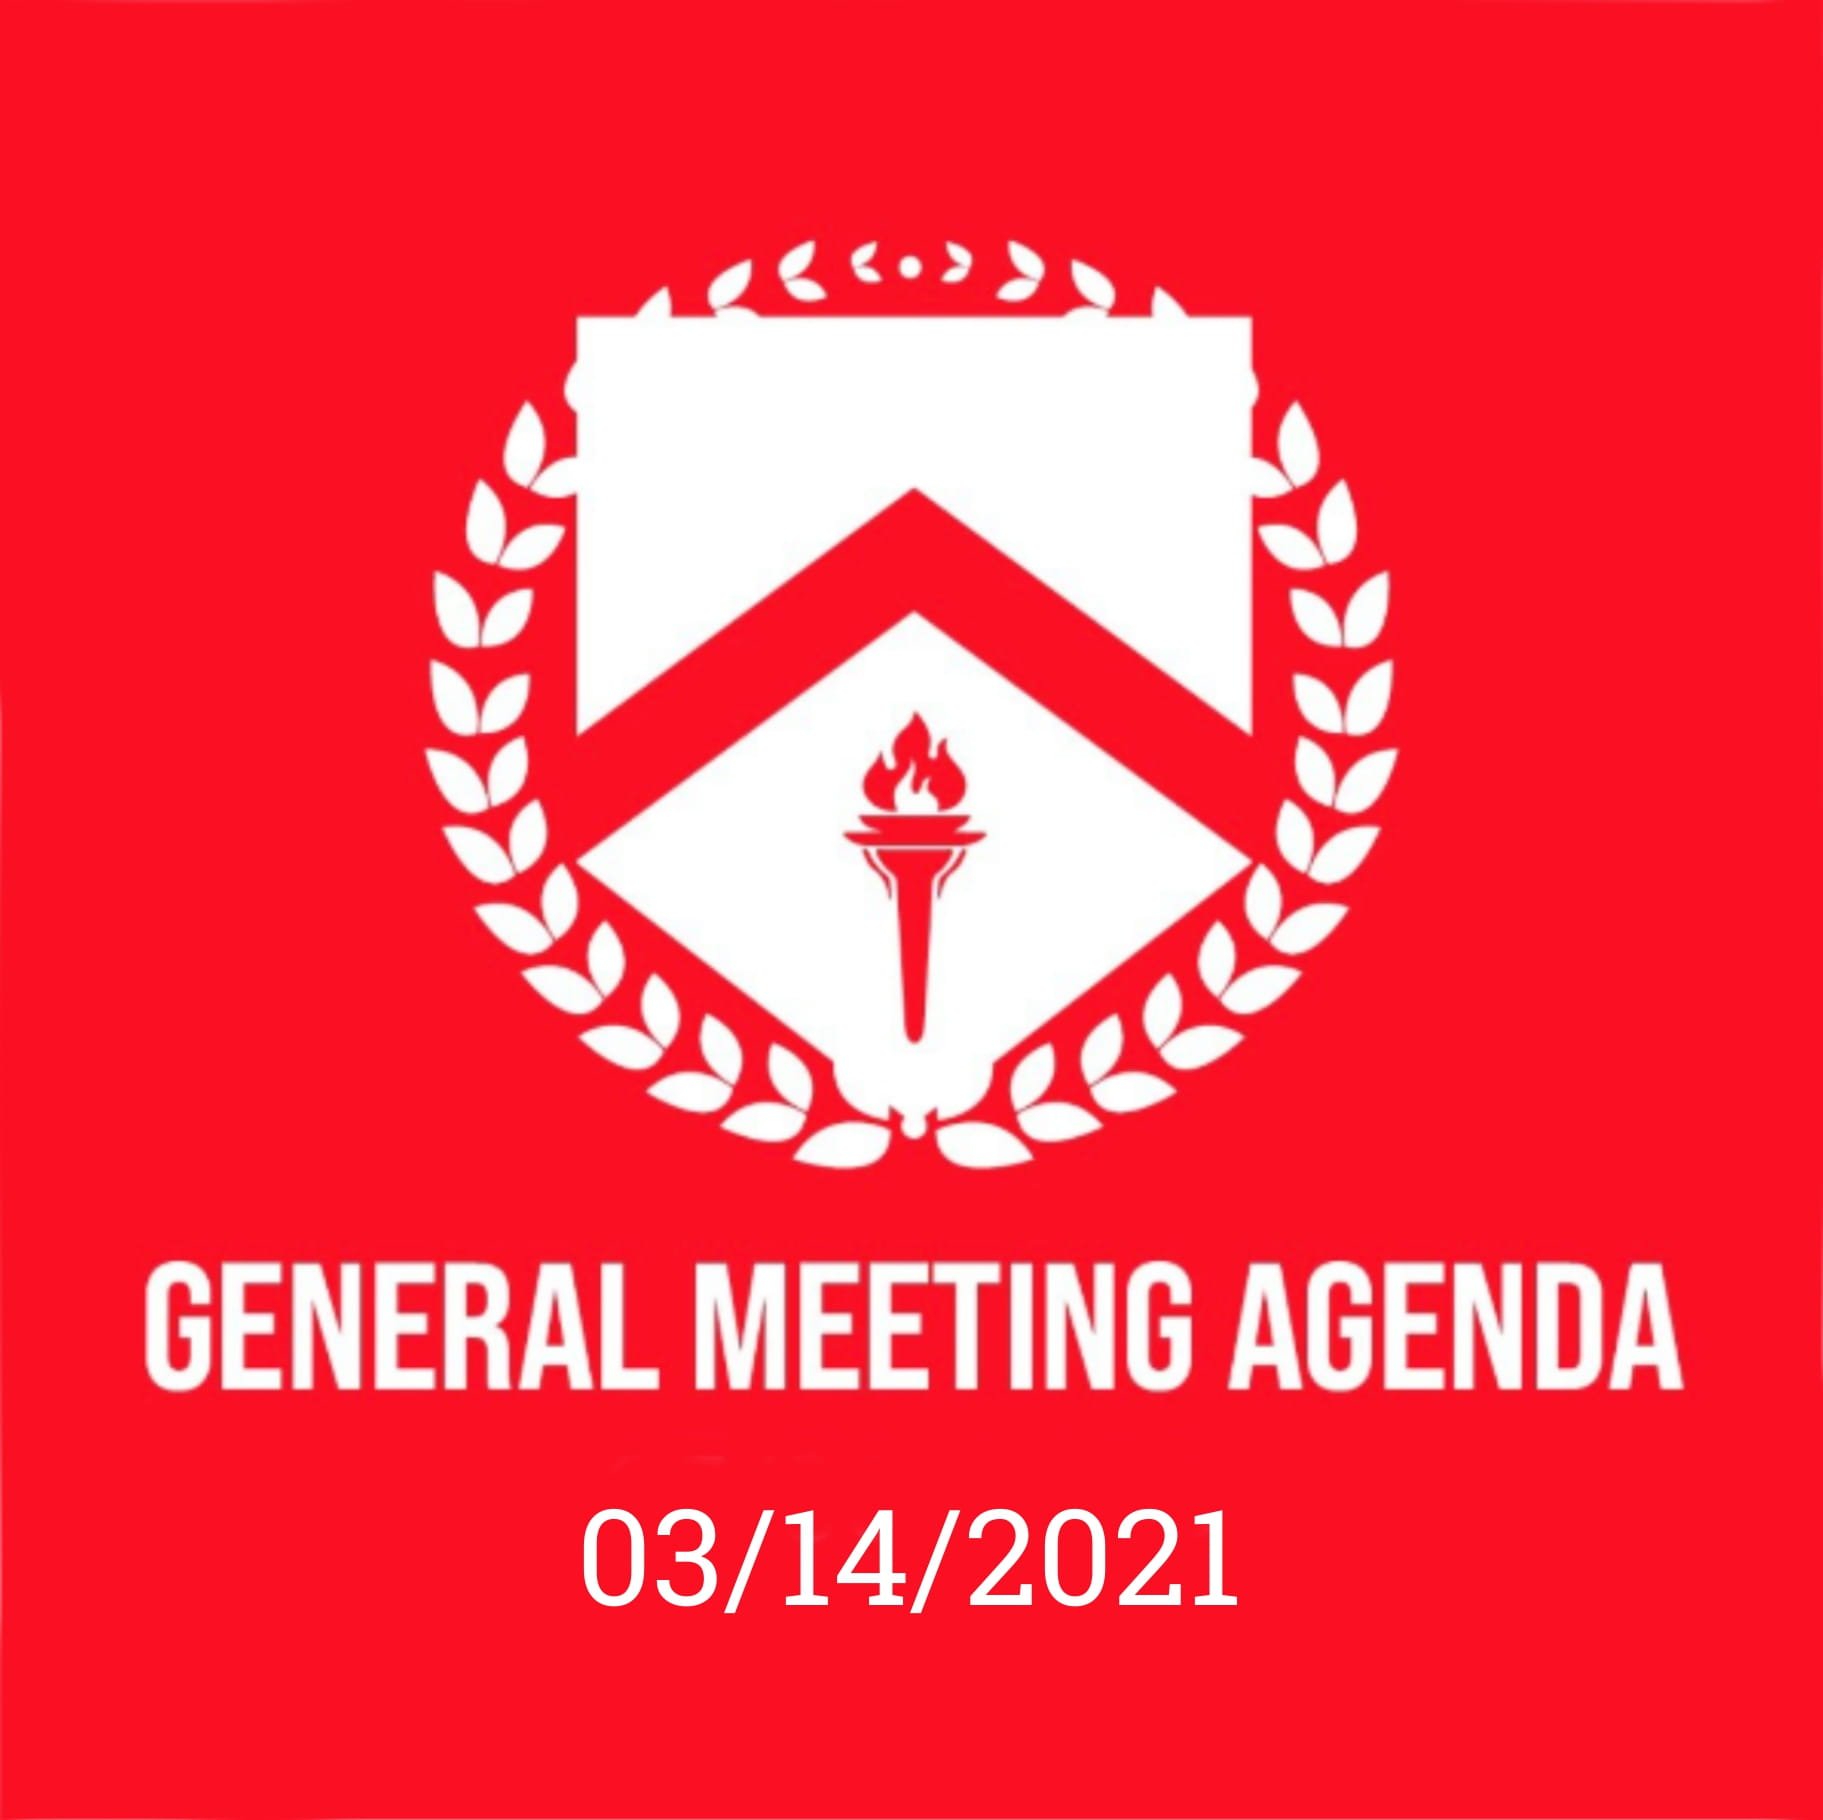 GENERAL MEETING AGENDA